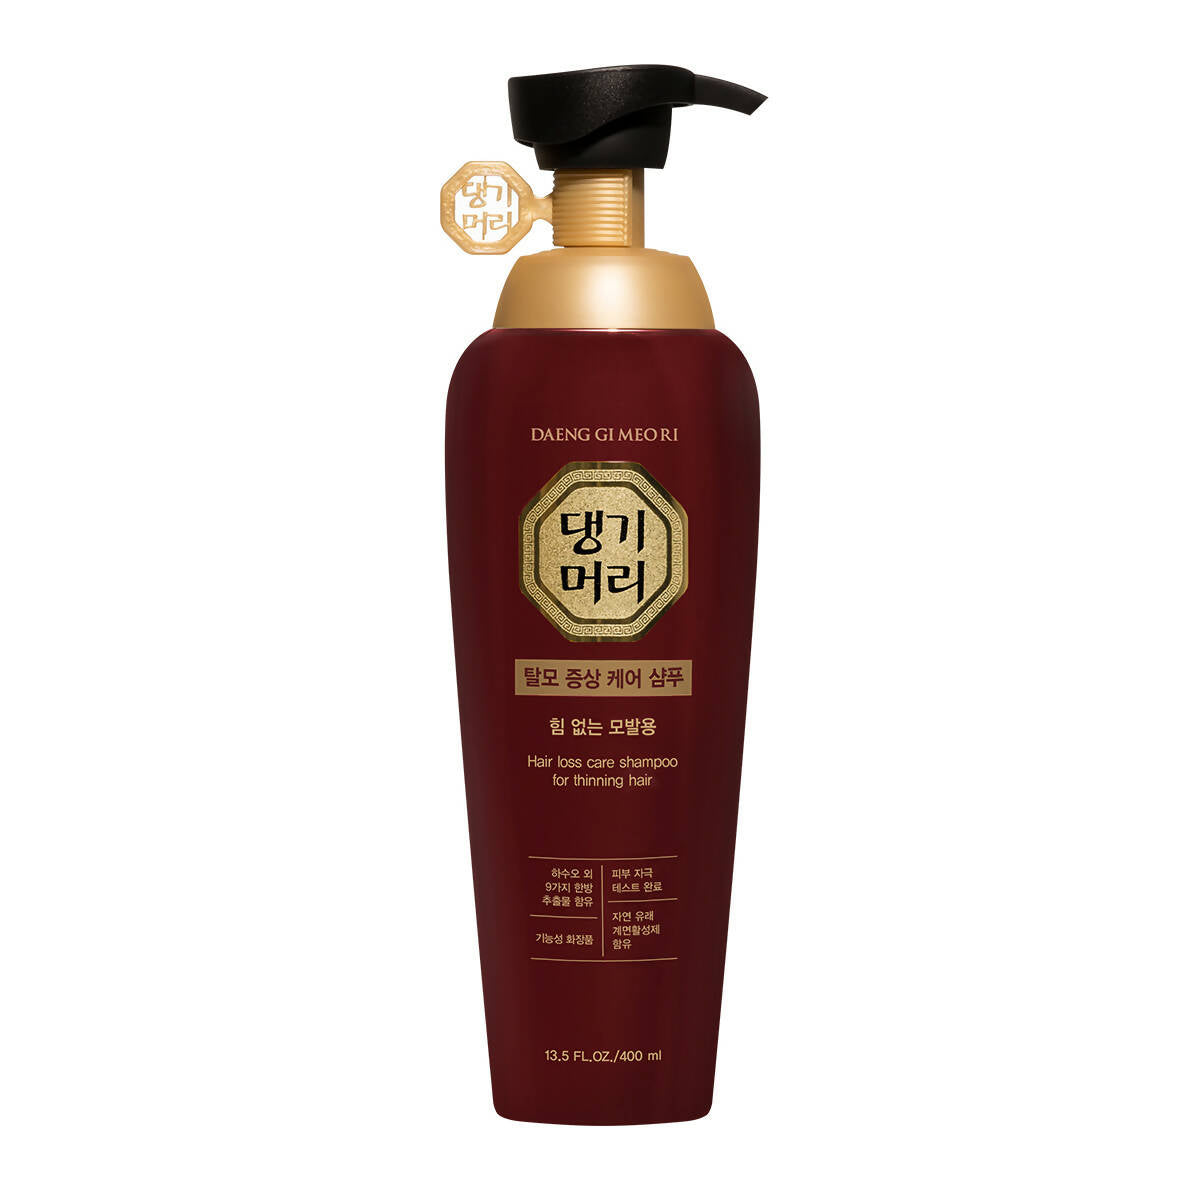 [Daeng Gi Meo Ri] Hair Loss Care Shampoo For Thinning Hair 400ml